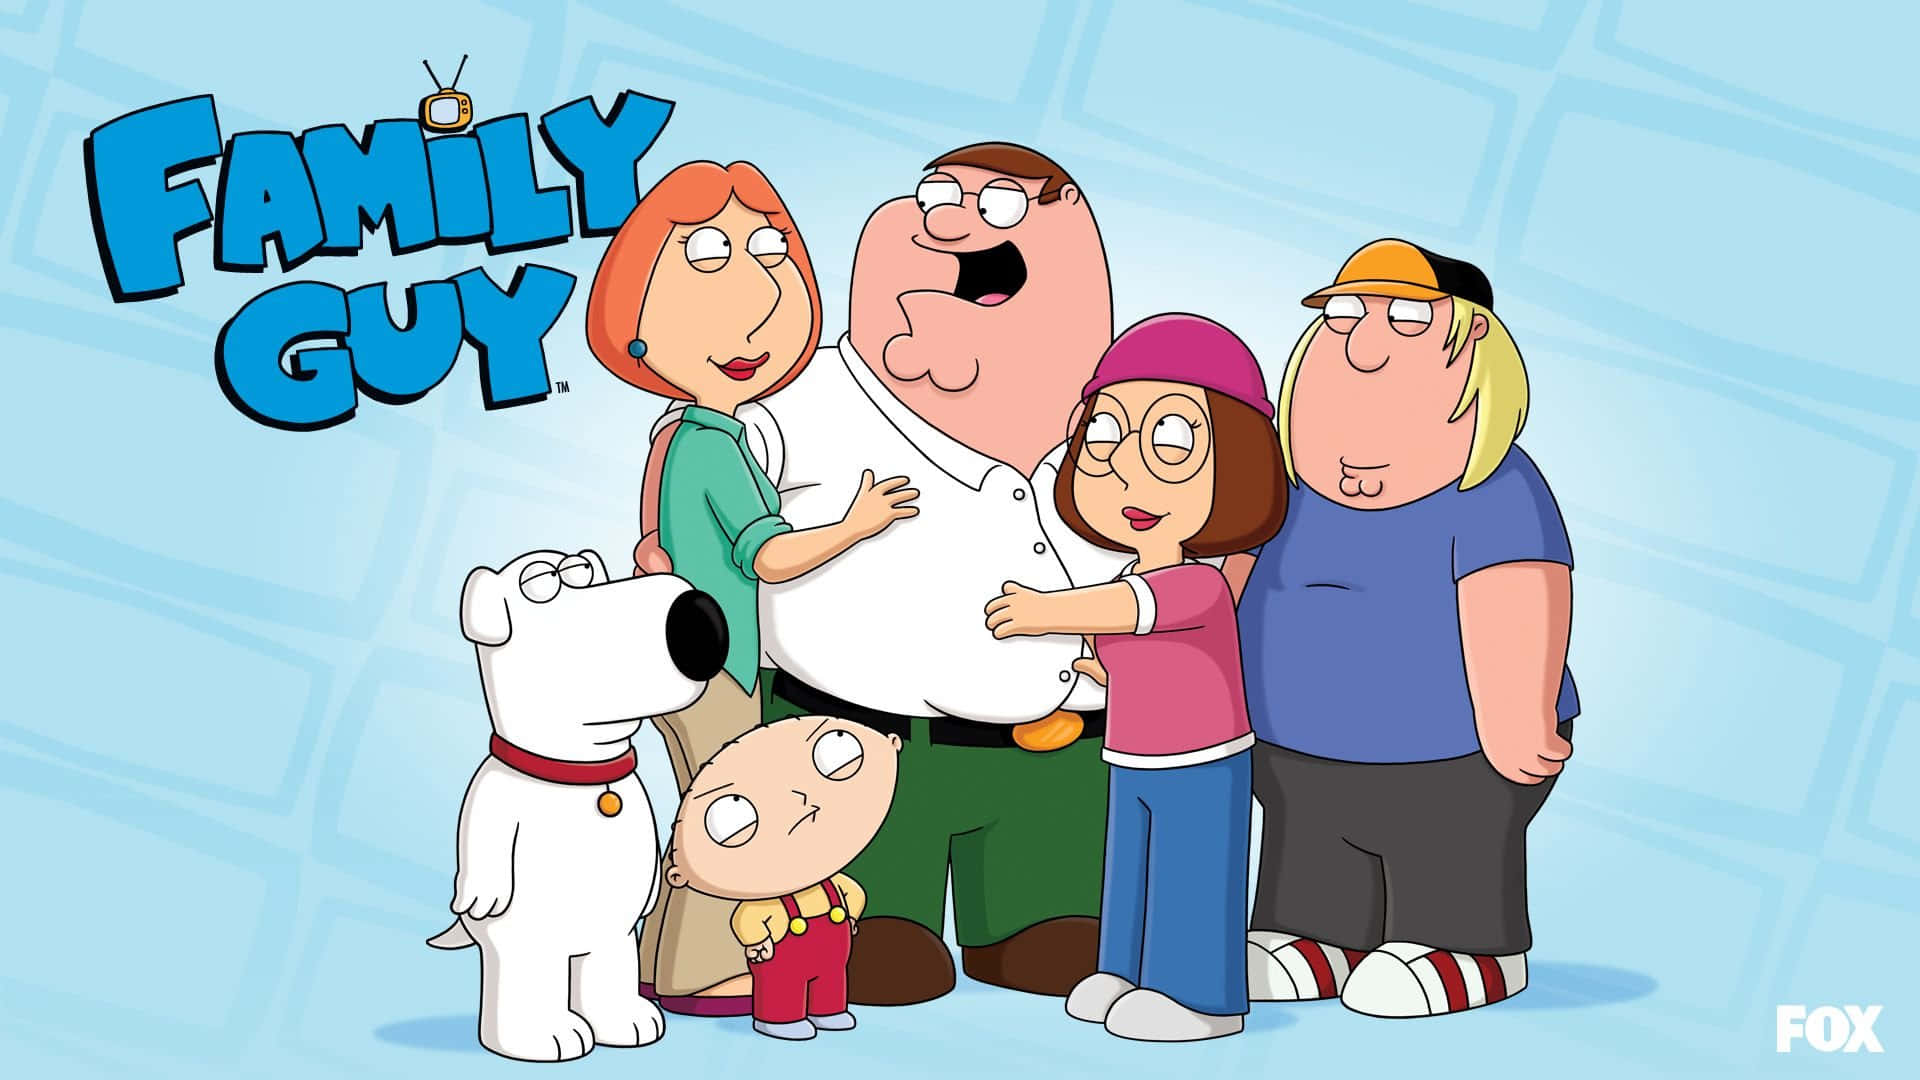 Brianthe Dog Fra Family Guy.